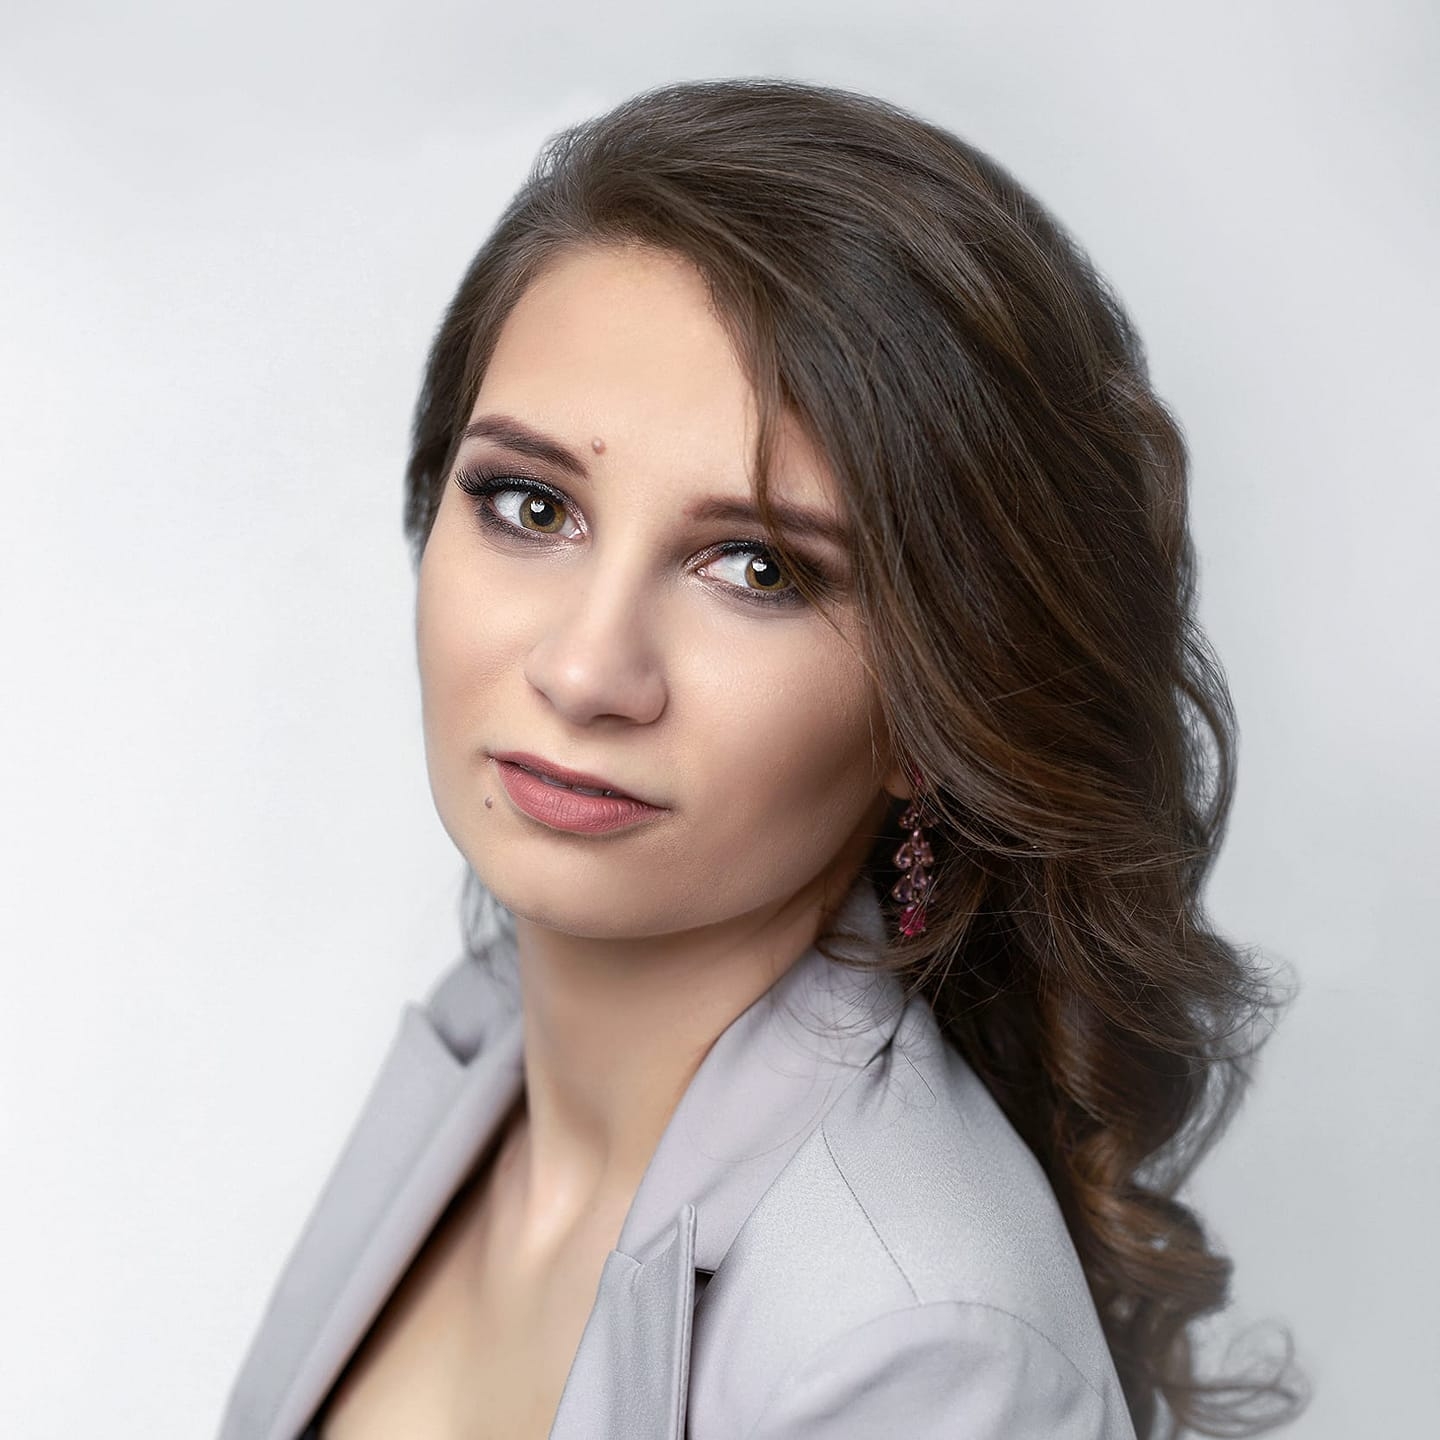  Angelika Kusek - Project Manager